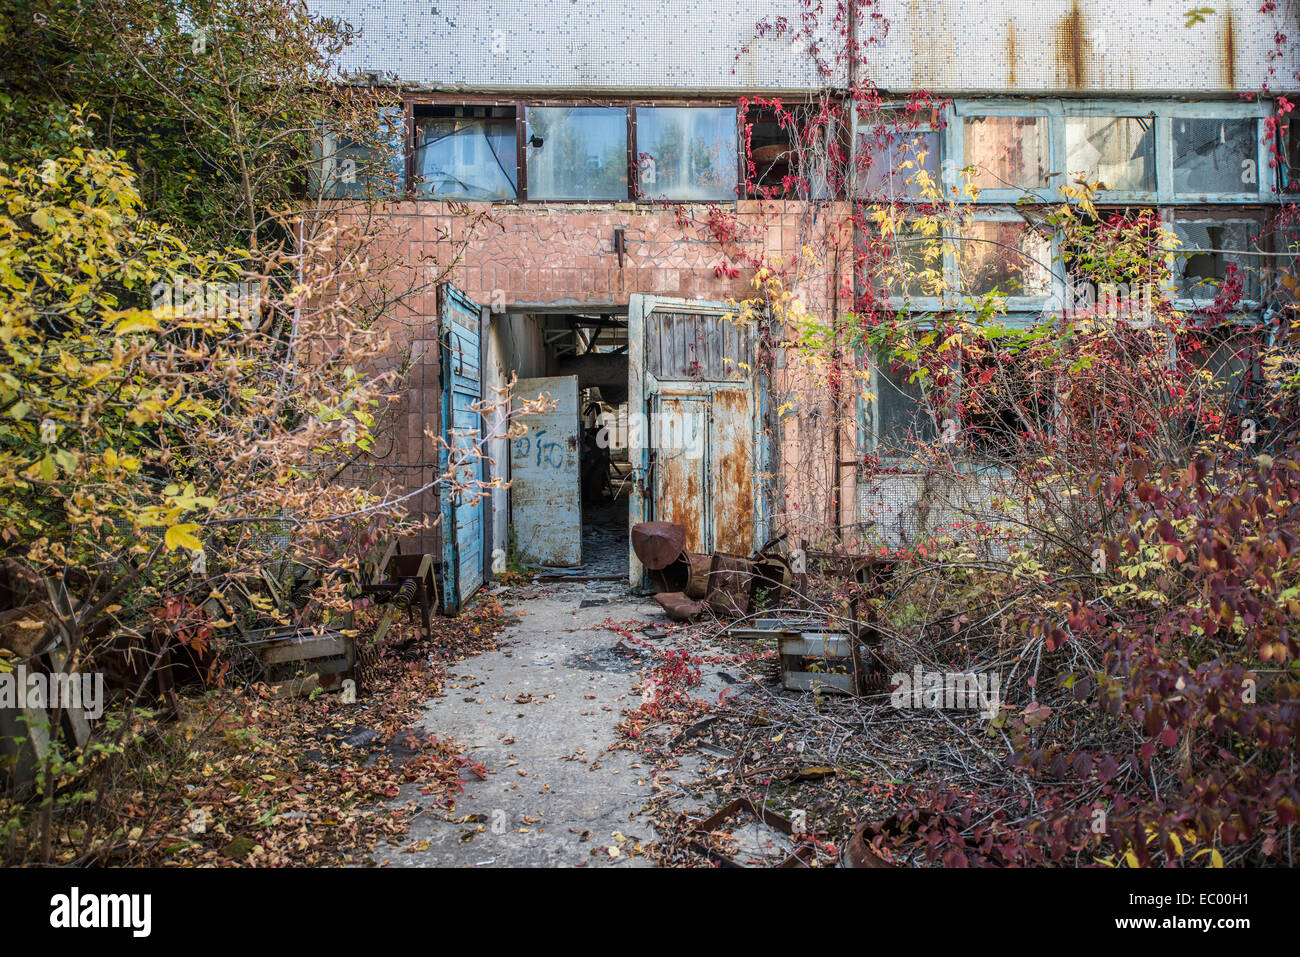 Giove in fabbrica pripjat città abbandonate Chernobyl Zona di esclusione, Ucraina Foto Stock